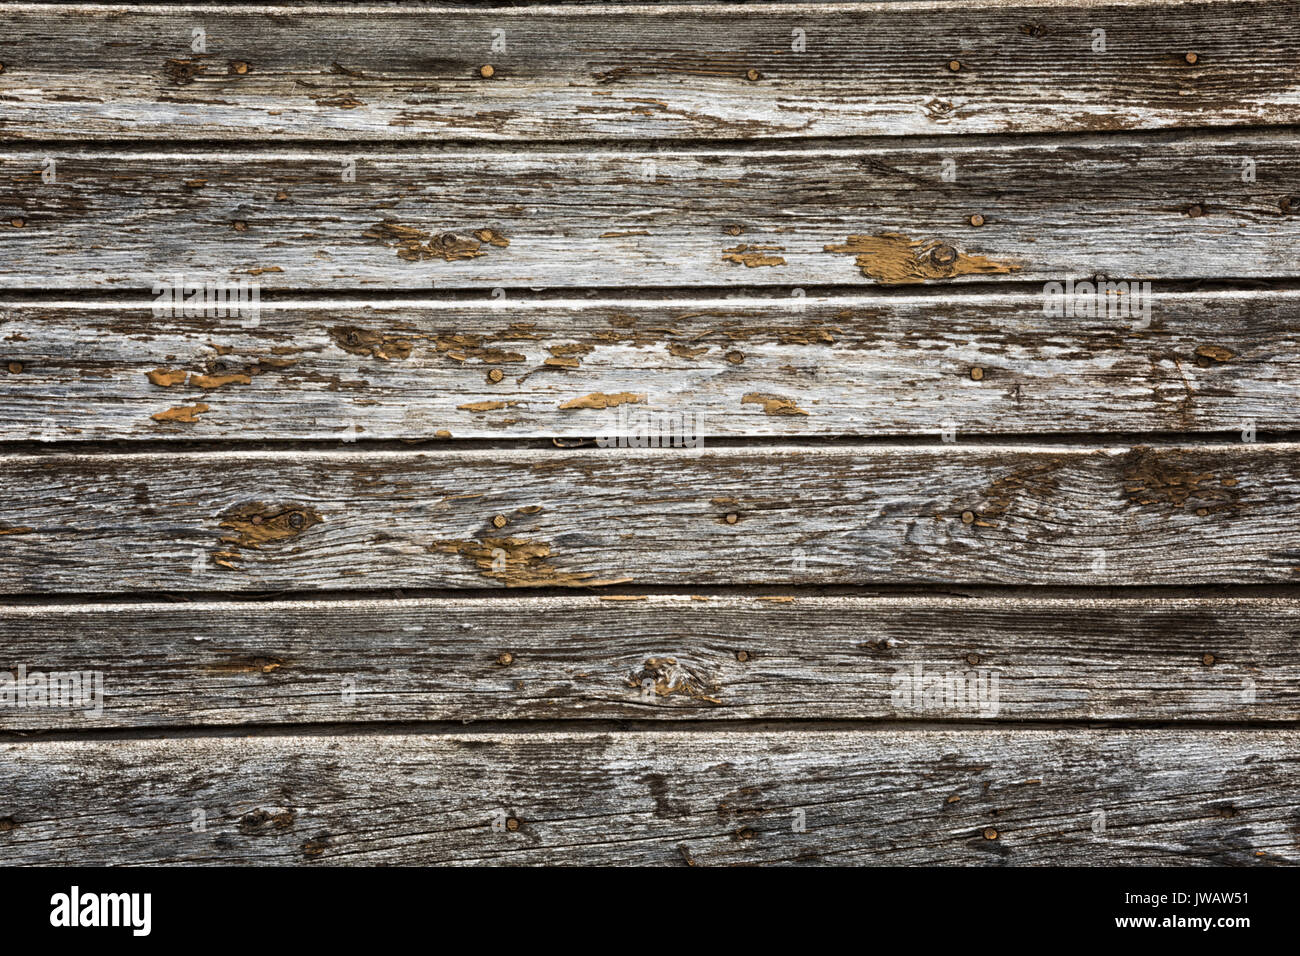 Bề mặt gỗ mài mòn có hoa văn tự nhiên: Hình ảnh này sẽ khiến bạn phải ngỡ ngàng trước vẻ đẹp hoàn hảo của bề mặt gỗ mài mòn có hoa văn tự nhiên. Những đường vân hoa nổi bật giữa chất liệu gỗ cứng cáp và bền vững, tạo ra một sự hài hòa và cân bằng đầy tự nhiên và tinh tế.